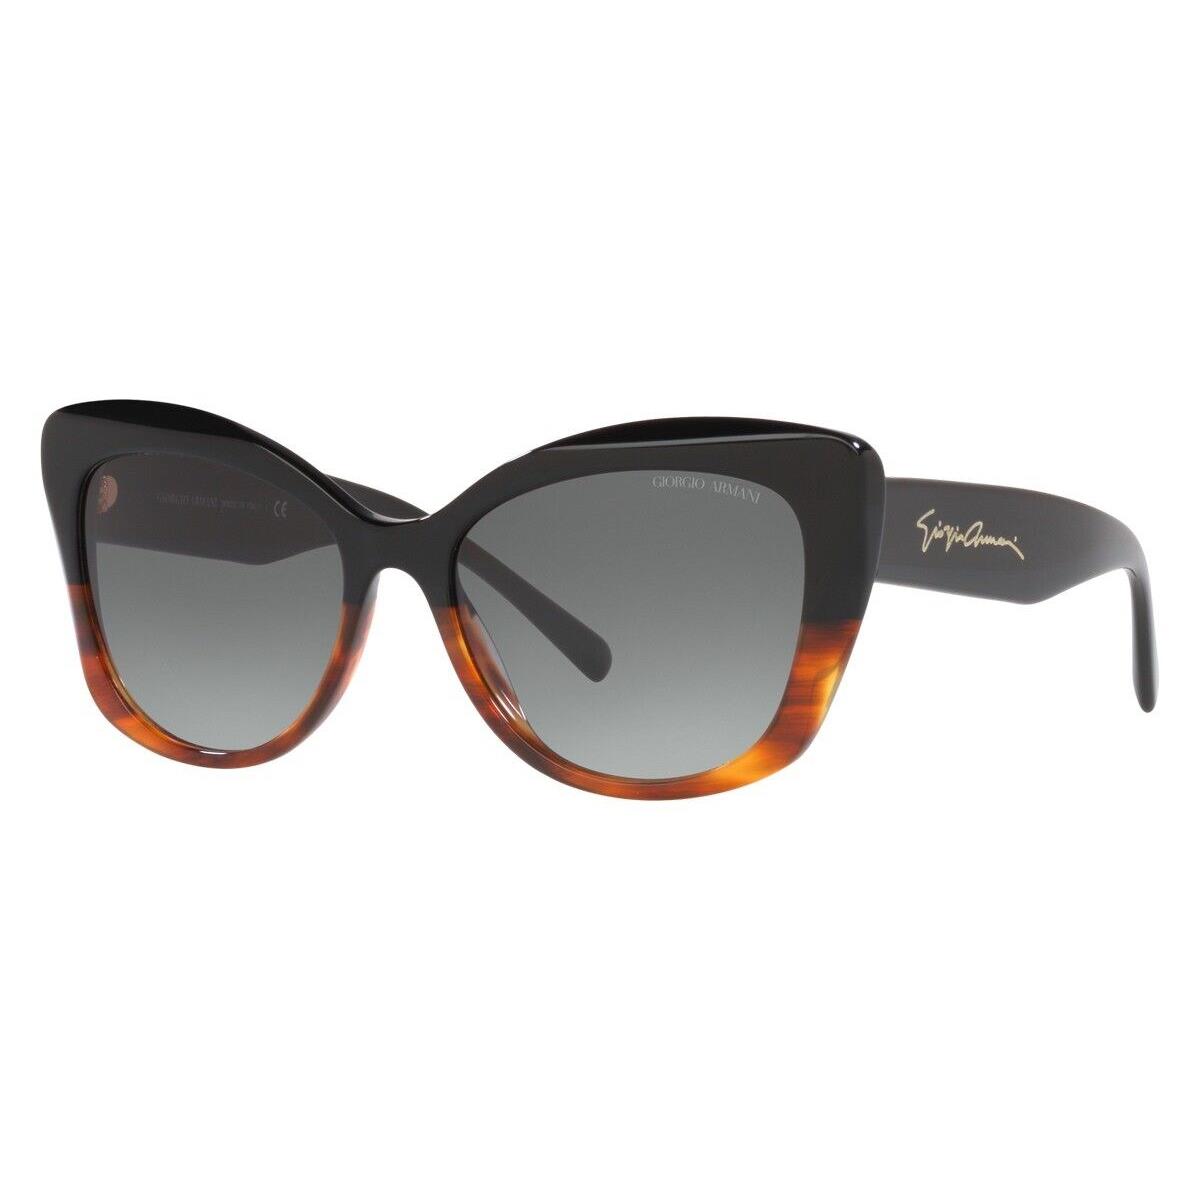 Giorgio Armani AR8161 Sunglasses Black/striped Brown Gradient Gray 56mm